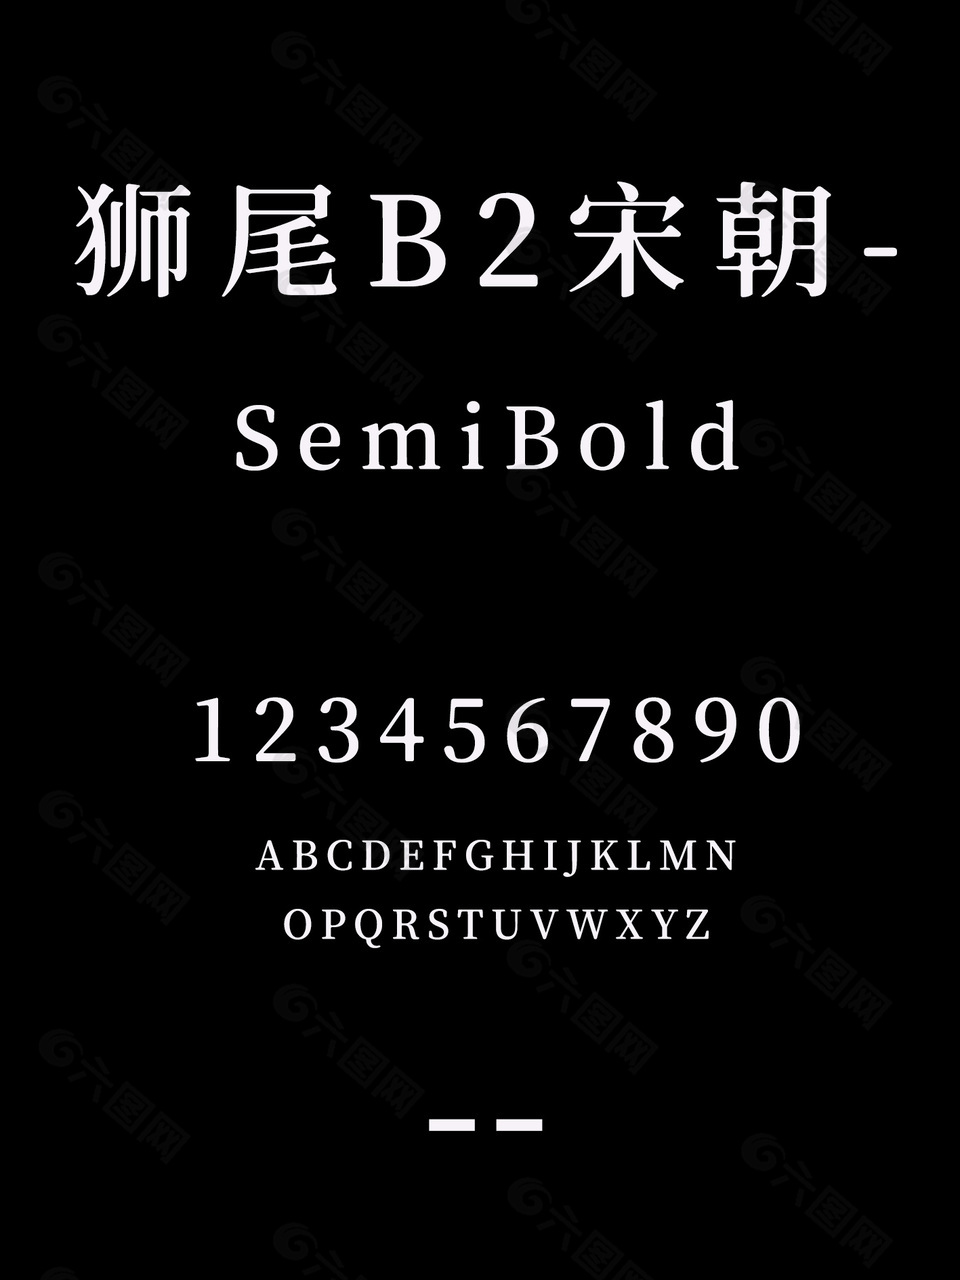 狮尾B2宋朝-SemiBold安装包